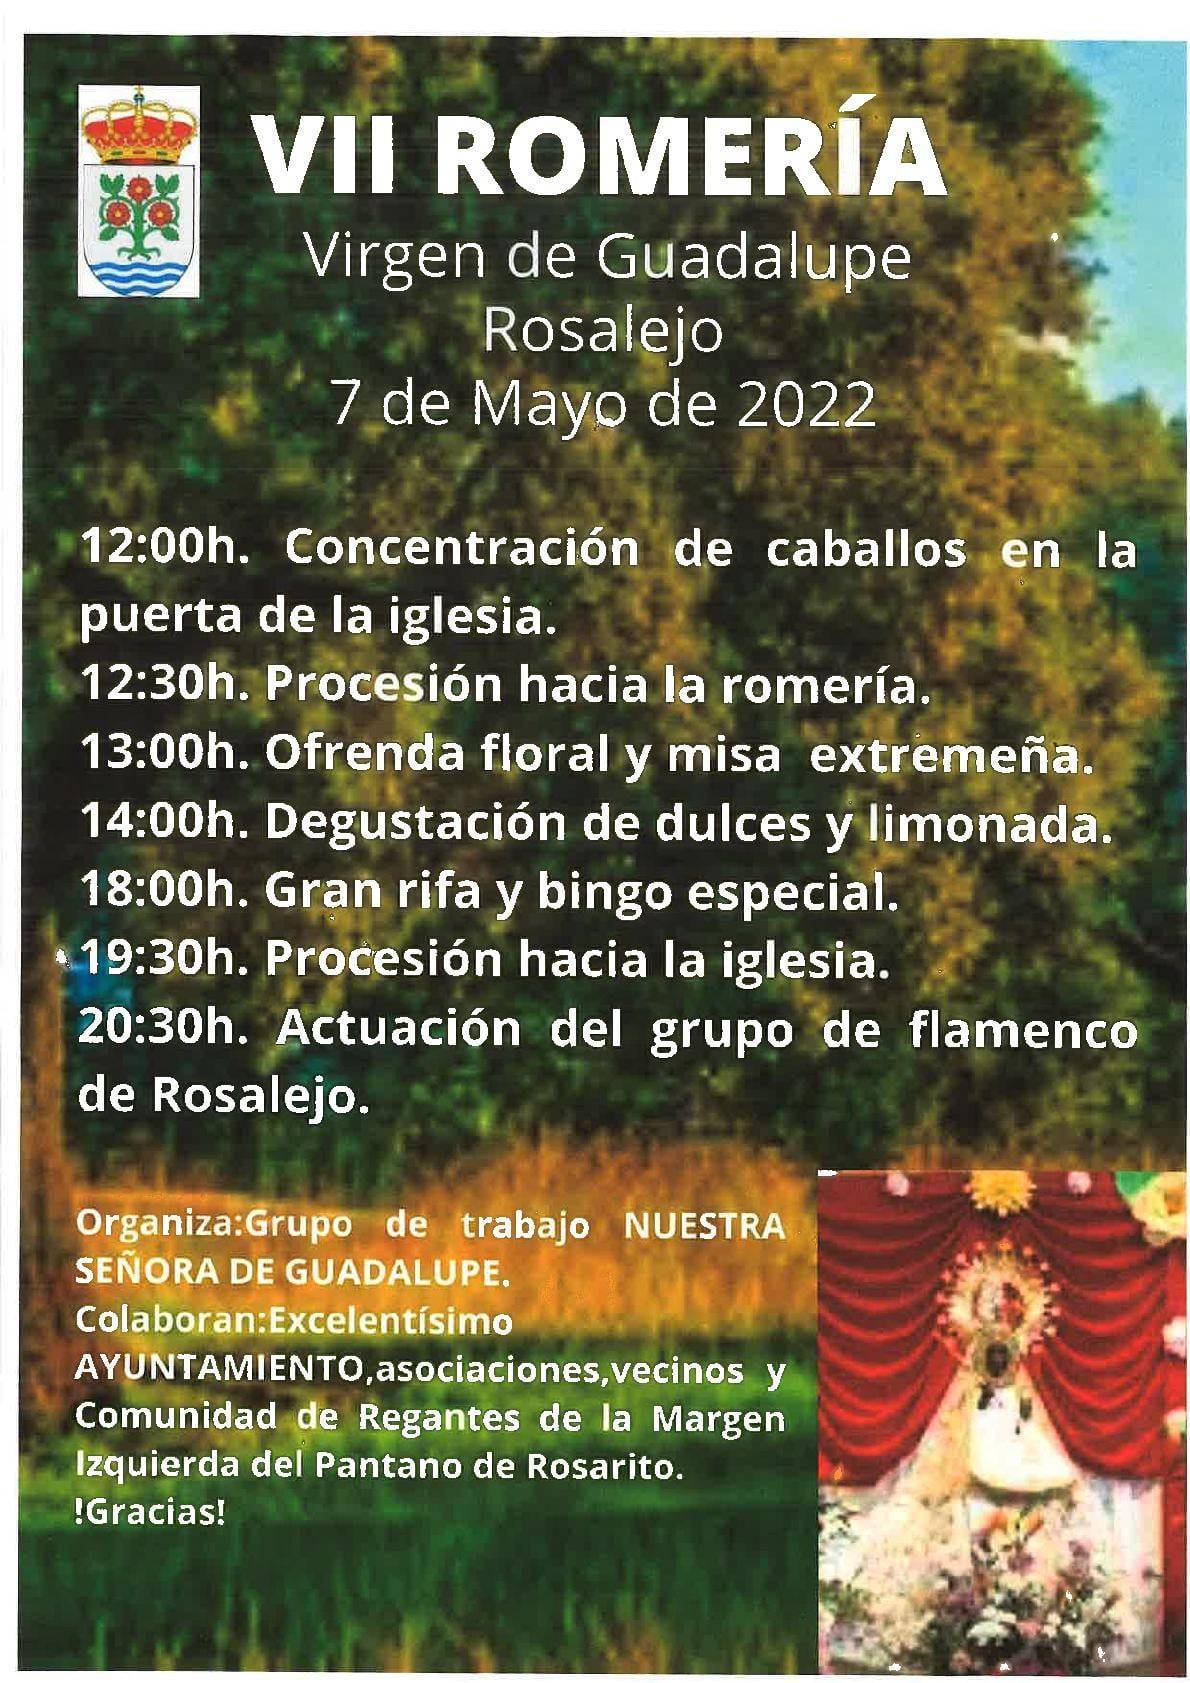 Romería de la Virgen de Guadalupe (2022) - Rosalejo (Cáceres)